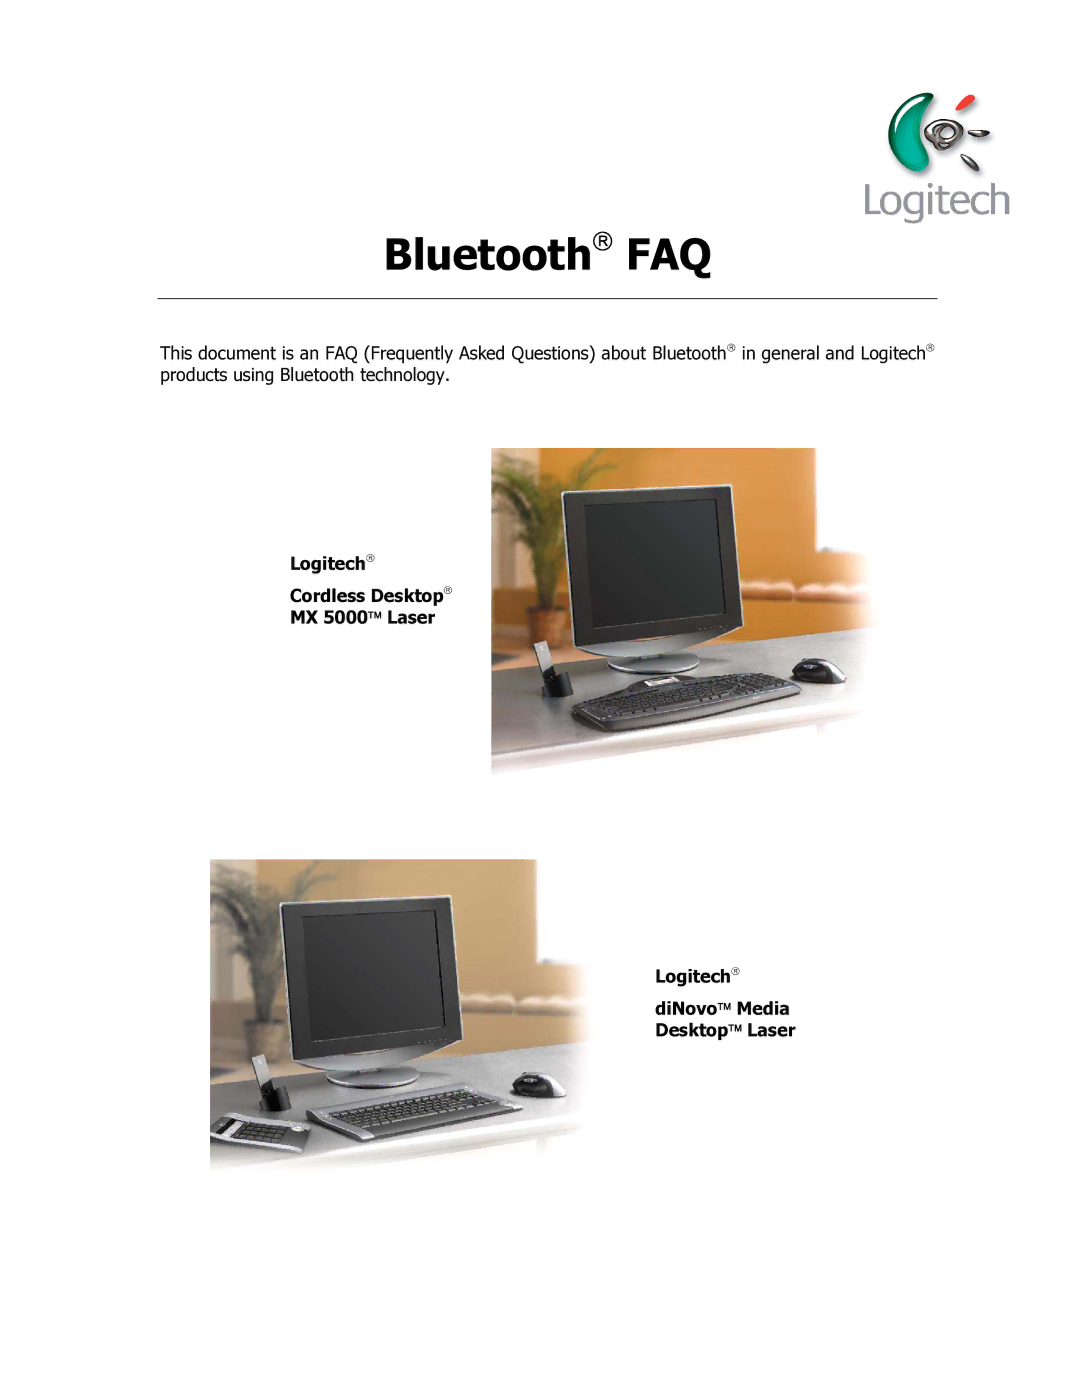 Logitech MX 5000 LASER manual Bluetooth FAQ 